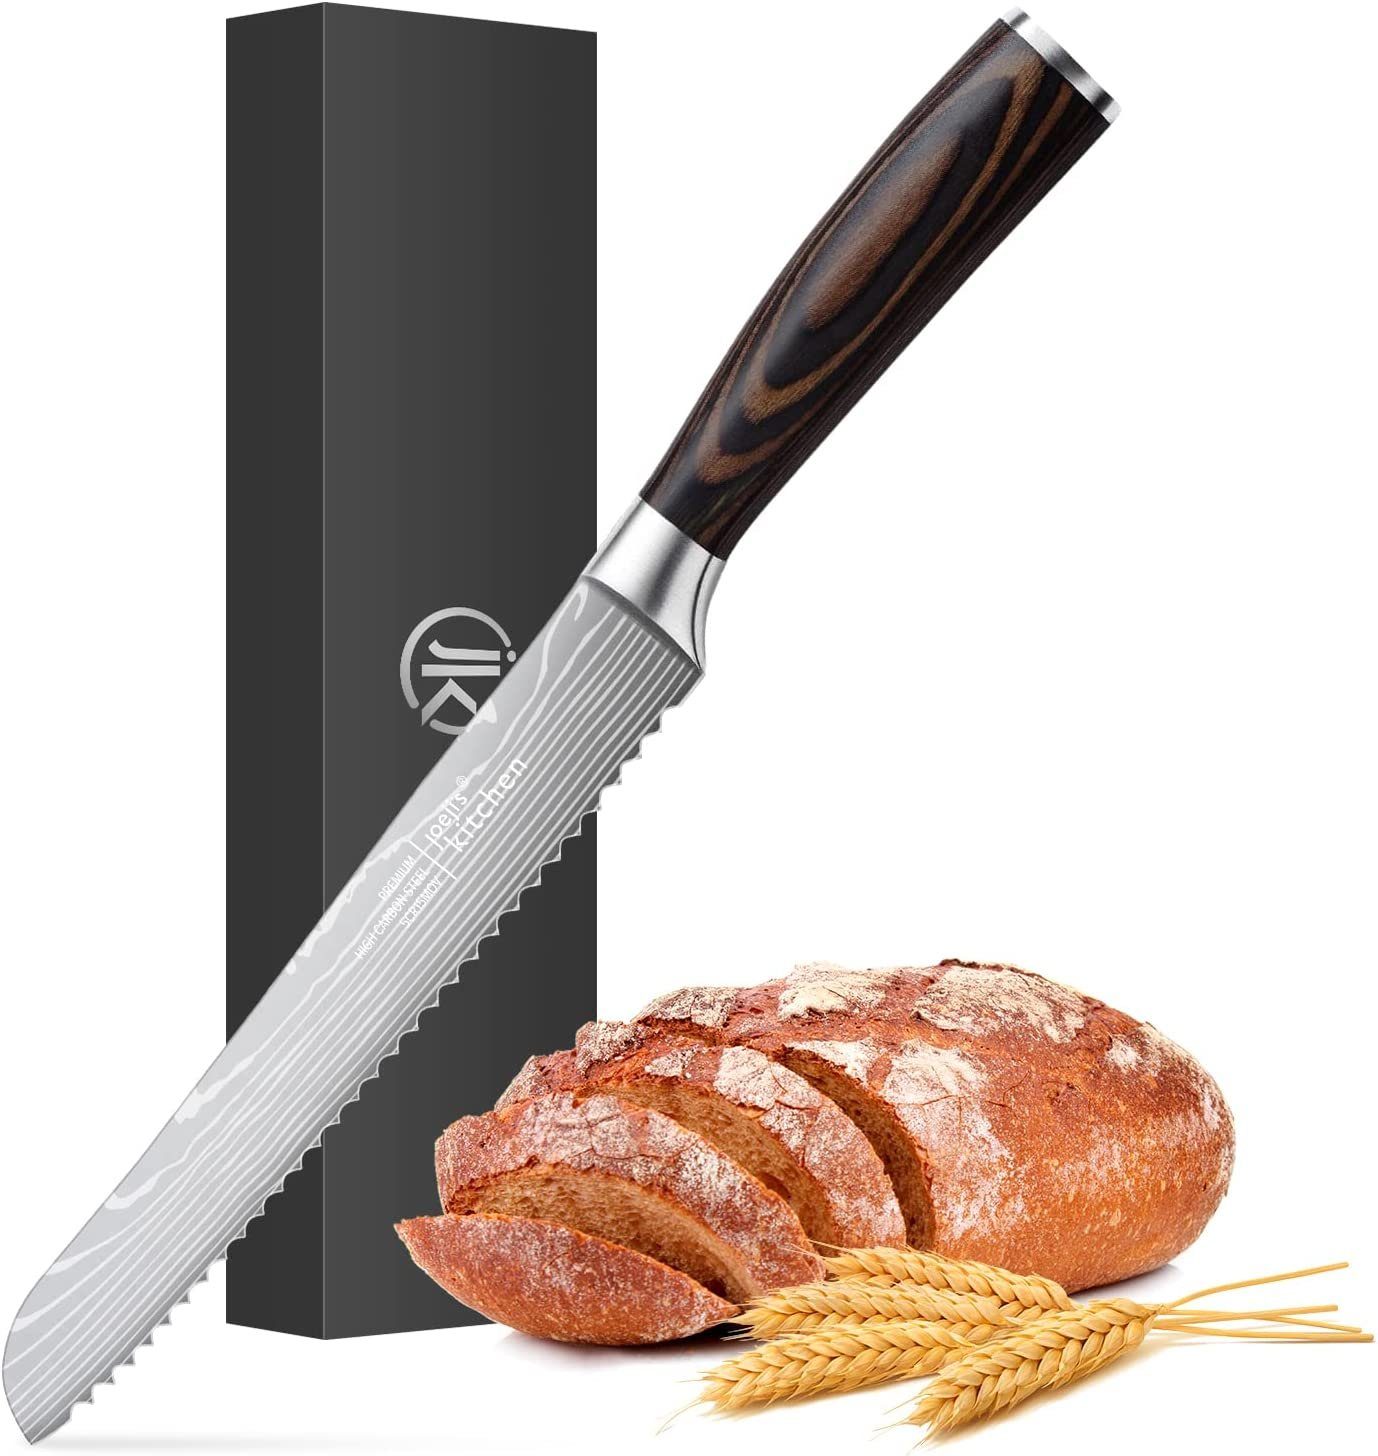 JOEJI’S KITCHEN Brotmesser Brotmesser Wellenschliff in silber mit hölzernem Griff